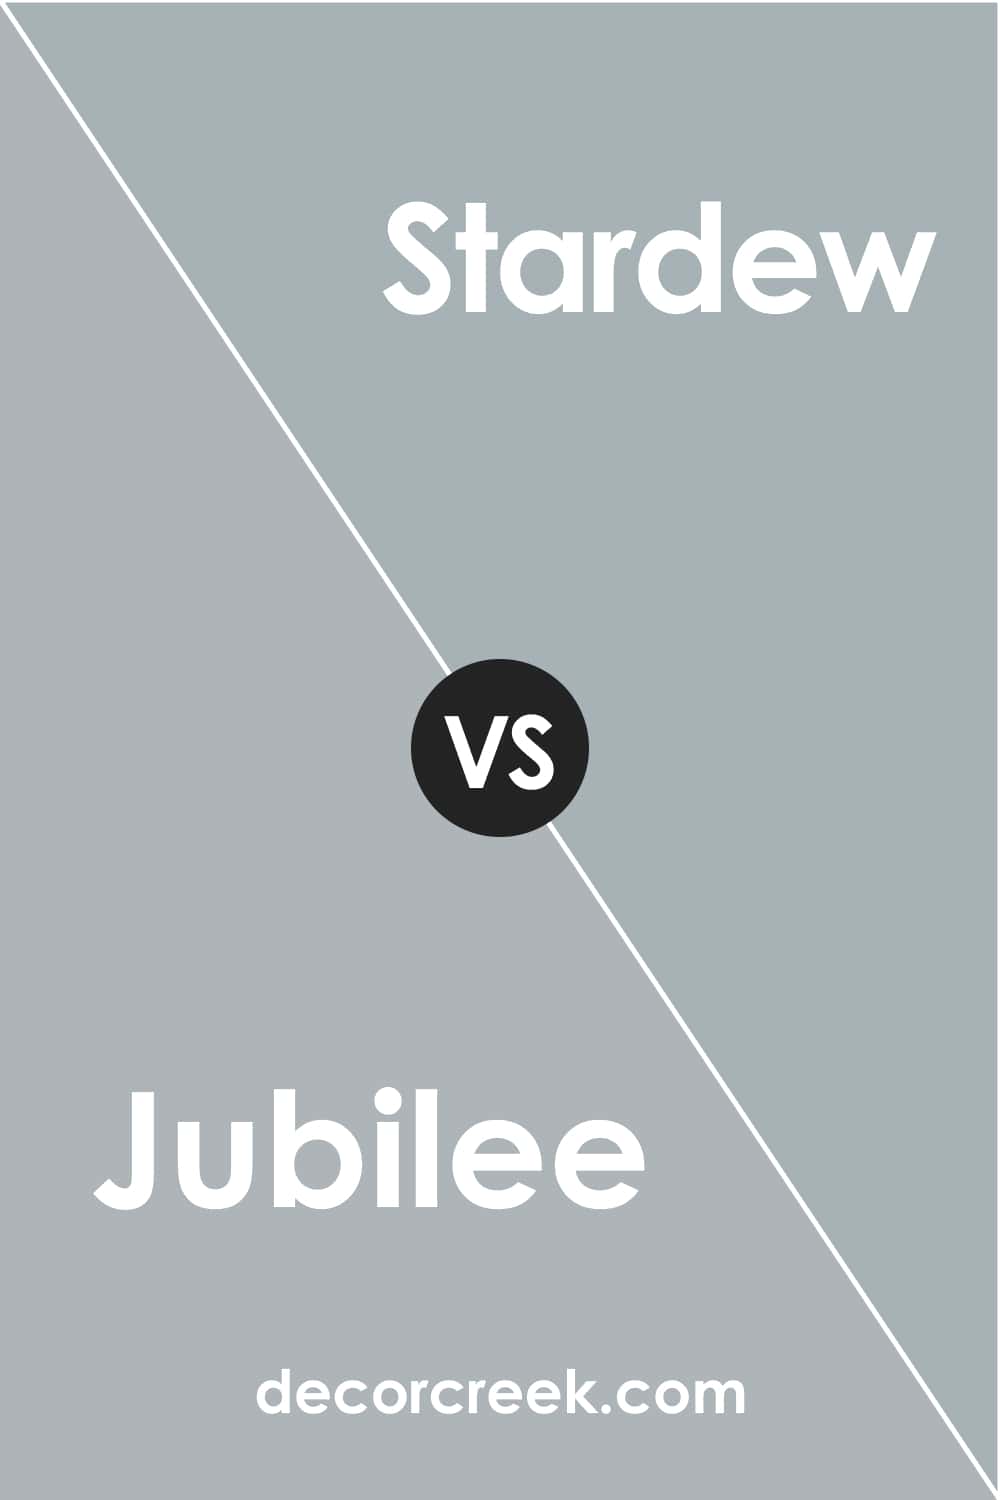 SW Jubilee vs SW Stardew